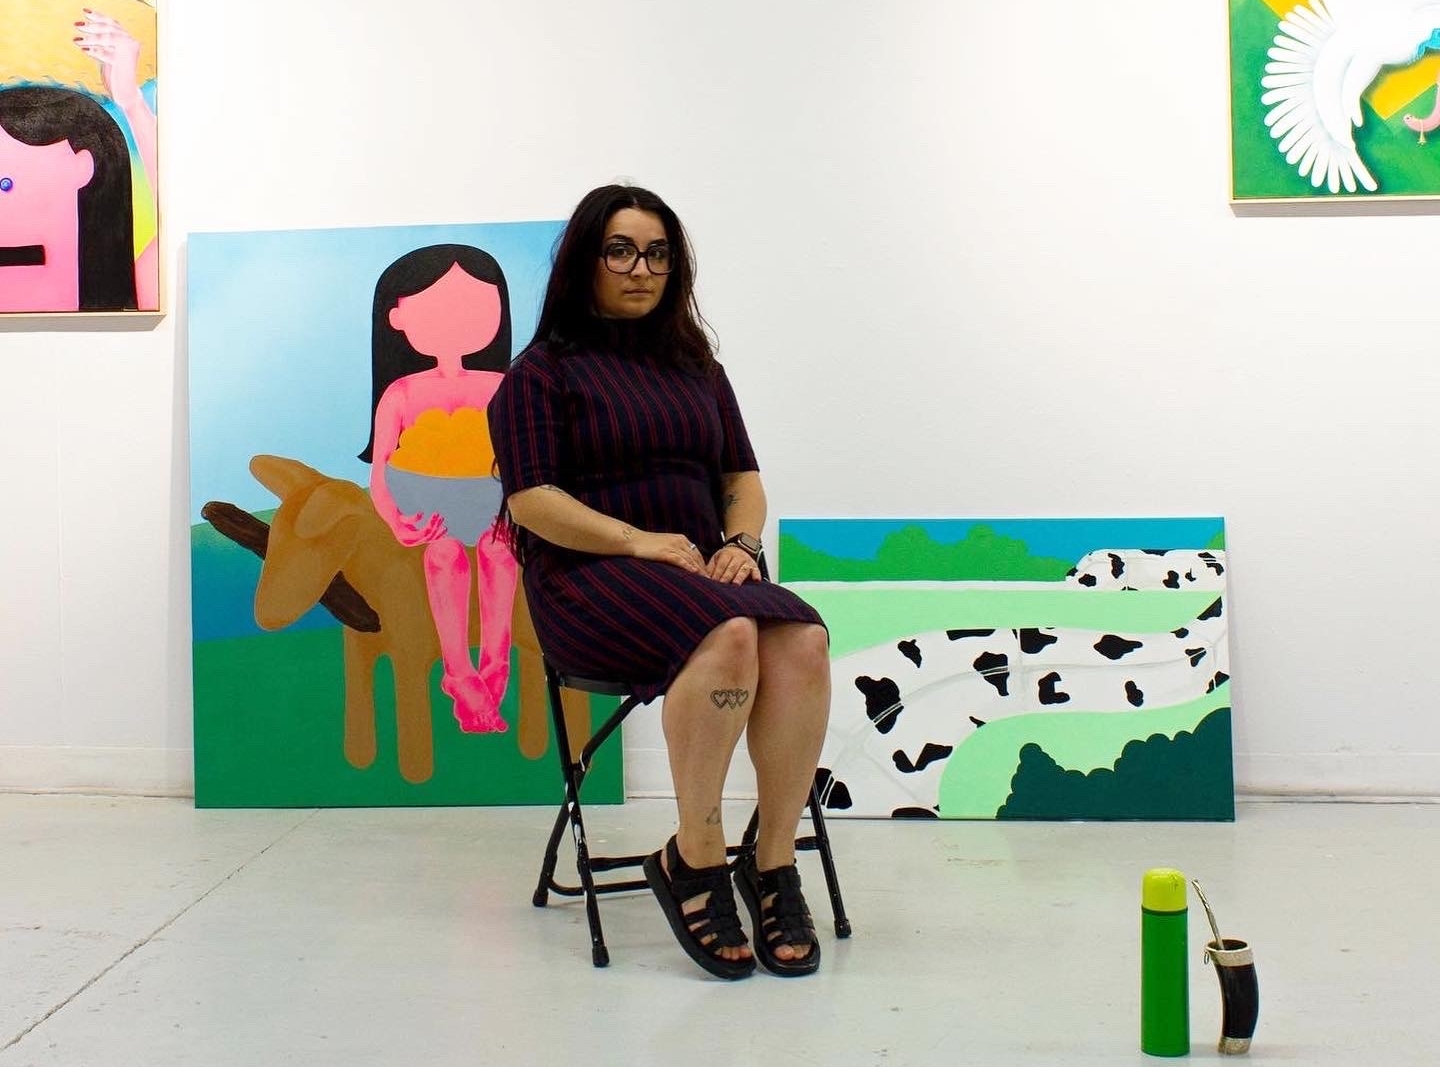 Femme assise dans une pièce avec des peintures colorées à l'arrière